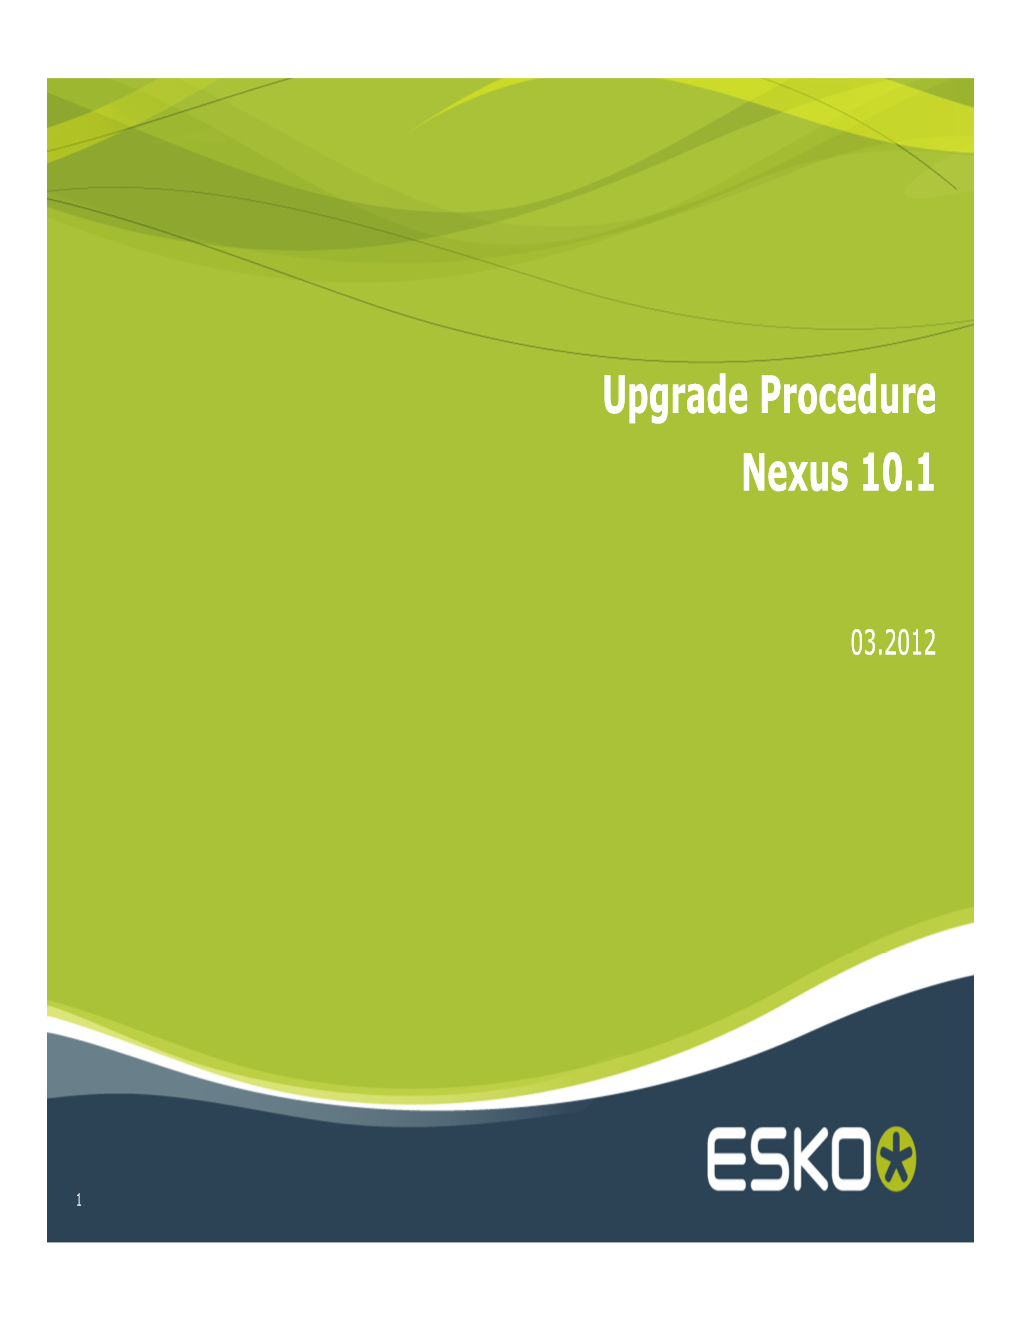 Upgrade Procedure for Nexus 10.1